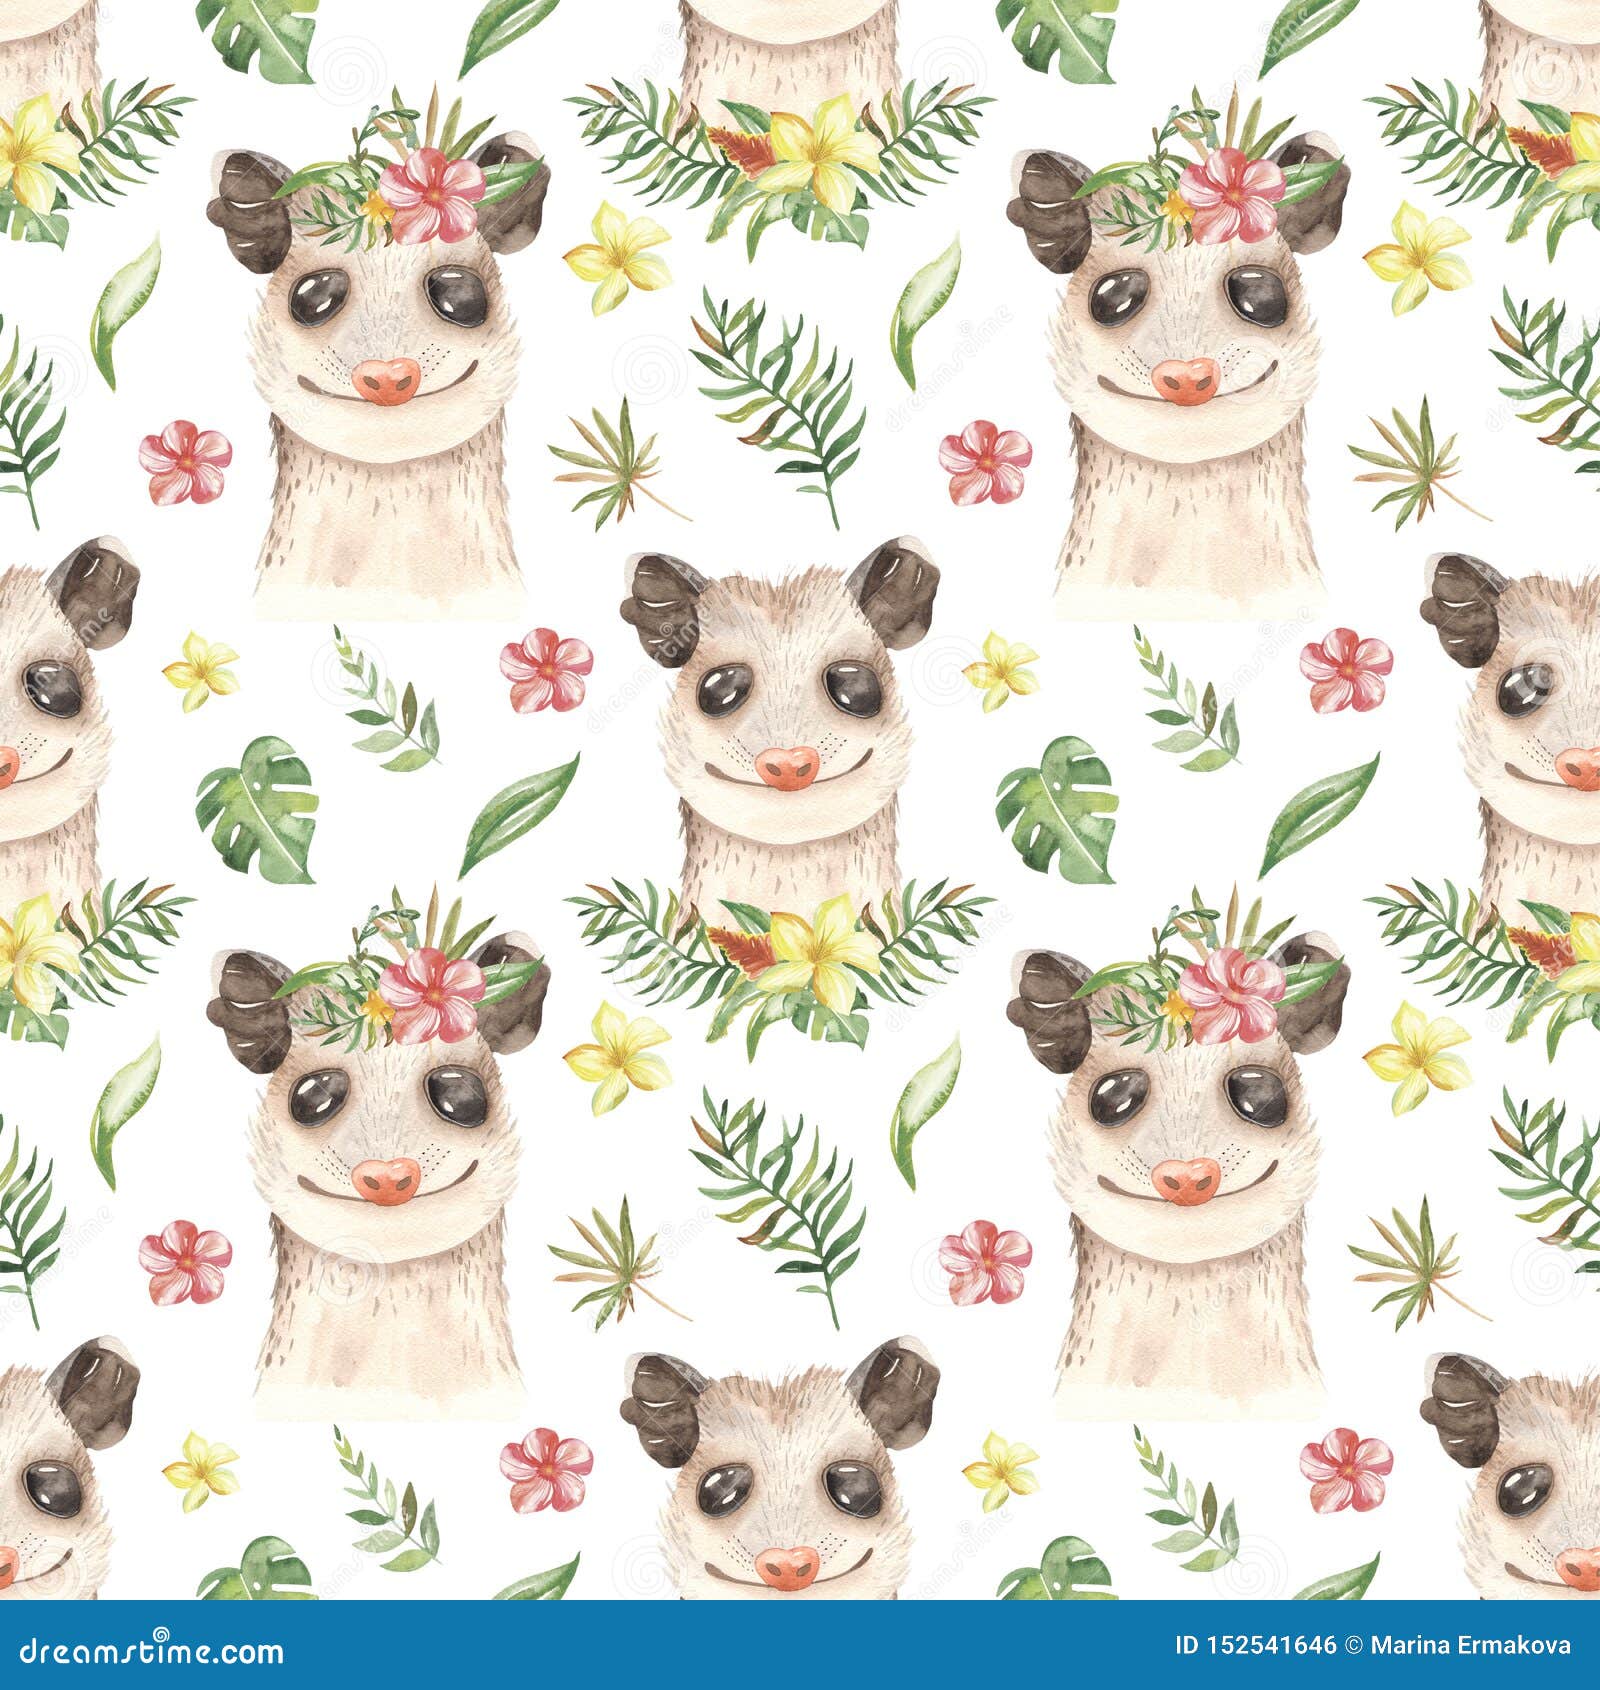 Wallpaper nature background possum images for desktop section животные   download